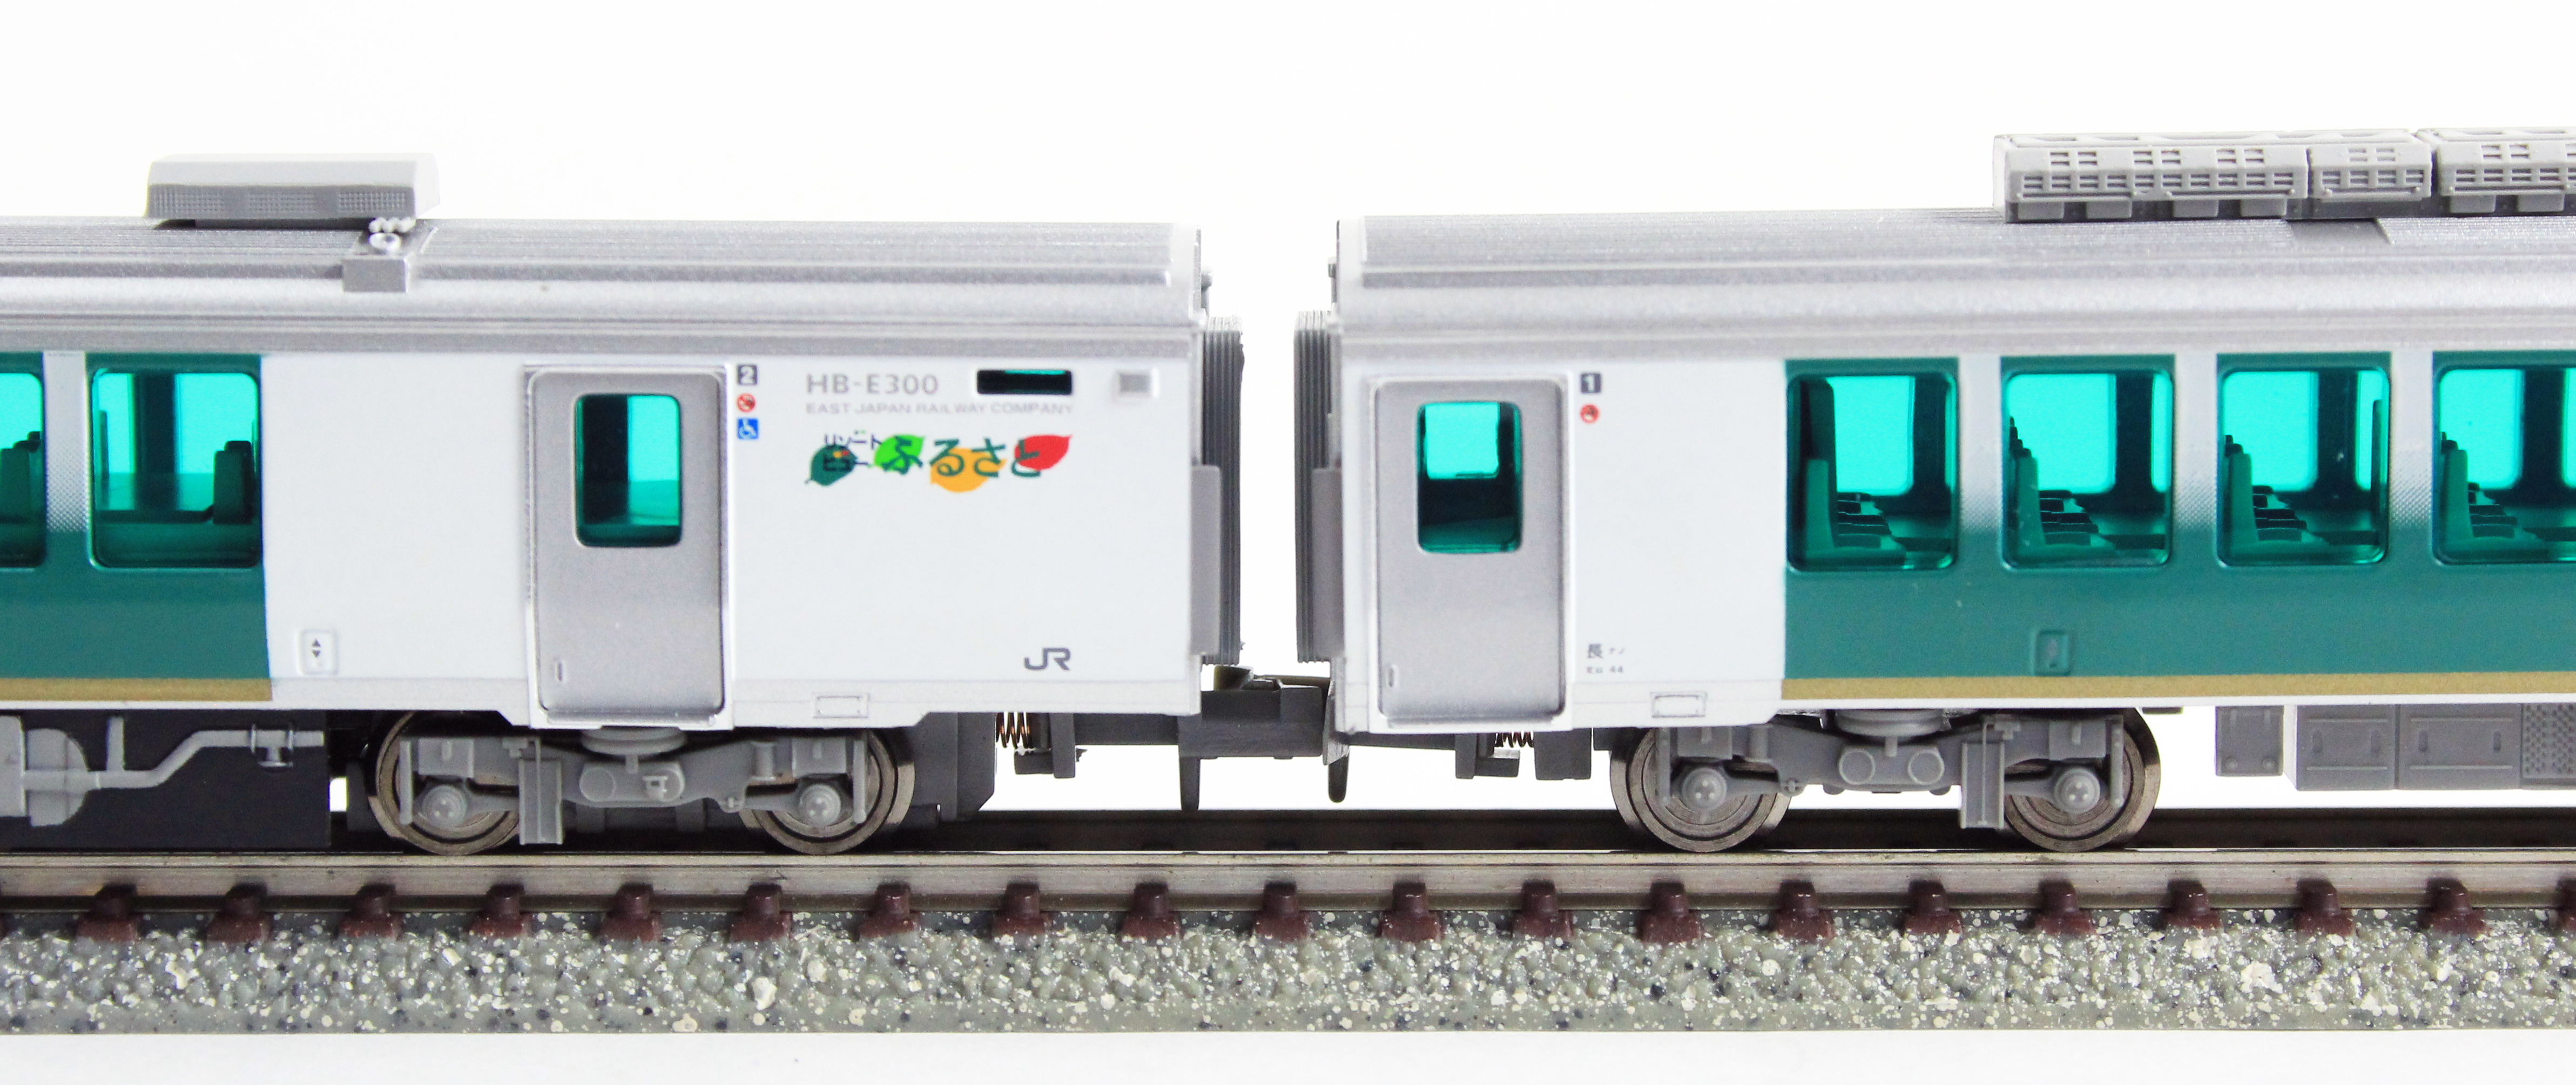 マイクロエース A9593 HB-E300 リゾートふるさと 2両セット 鉄道模型 N